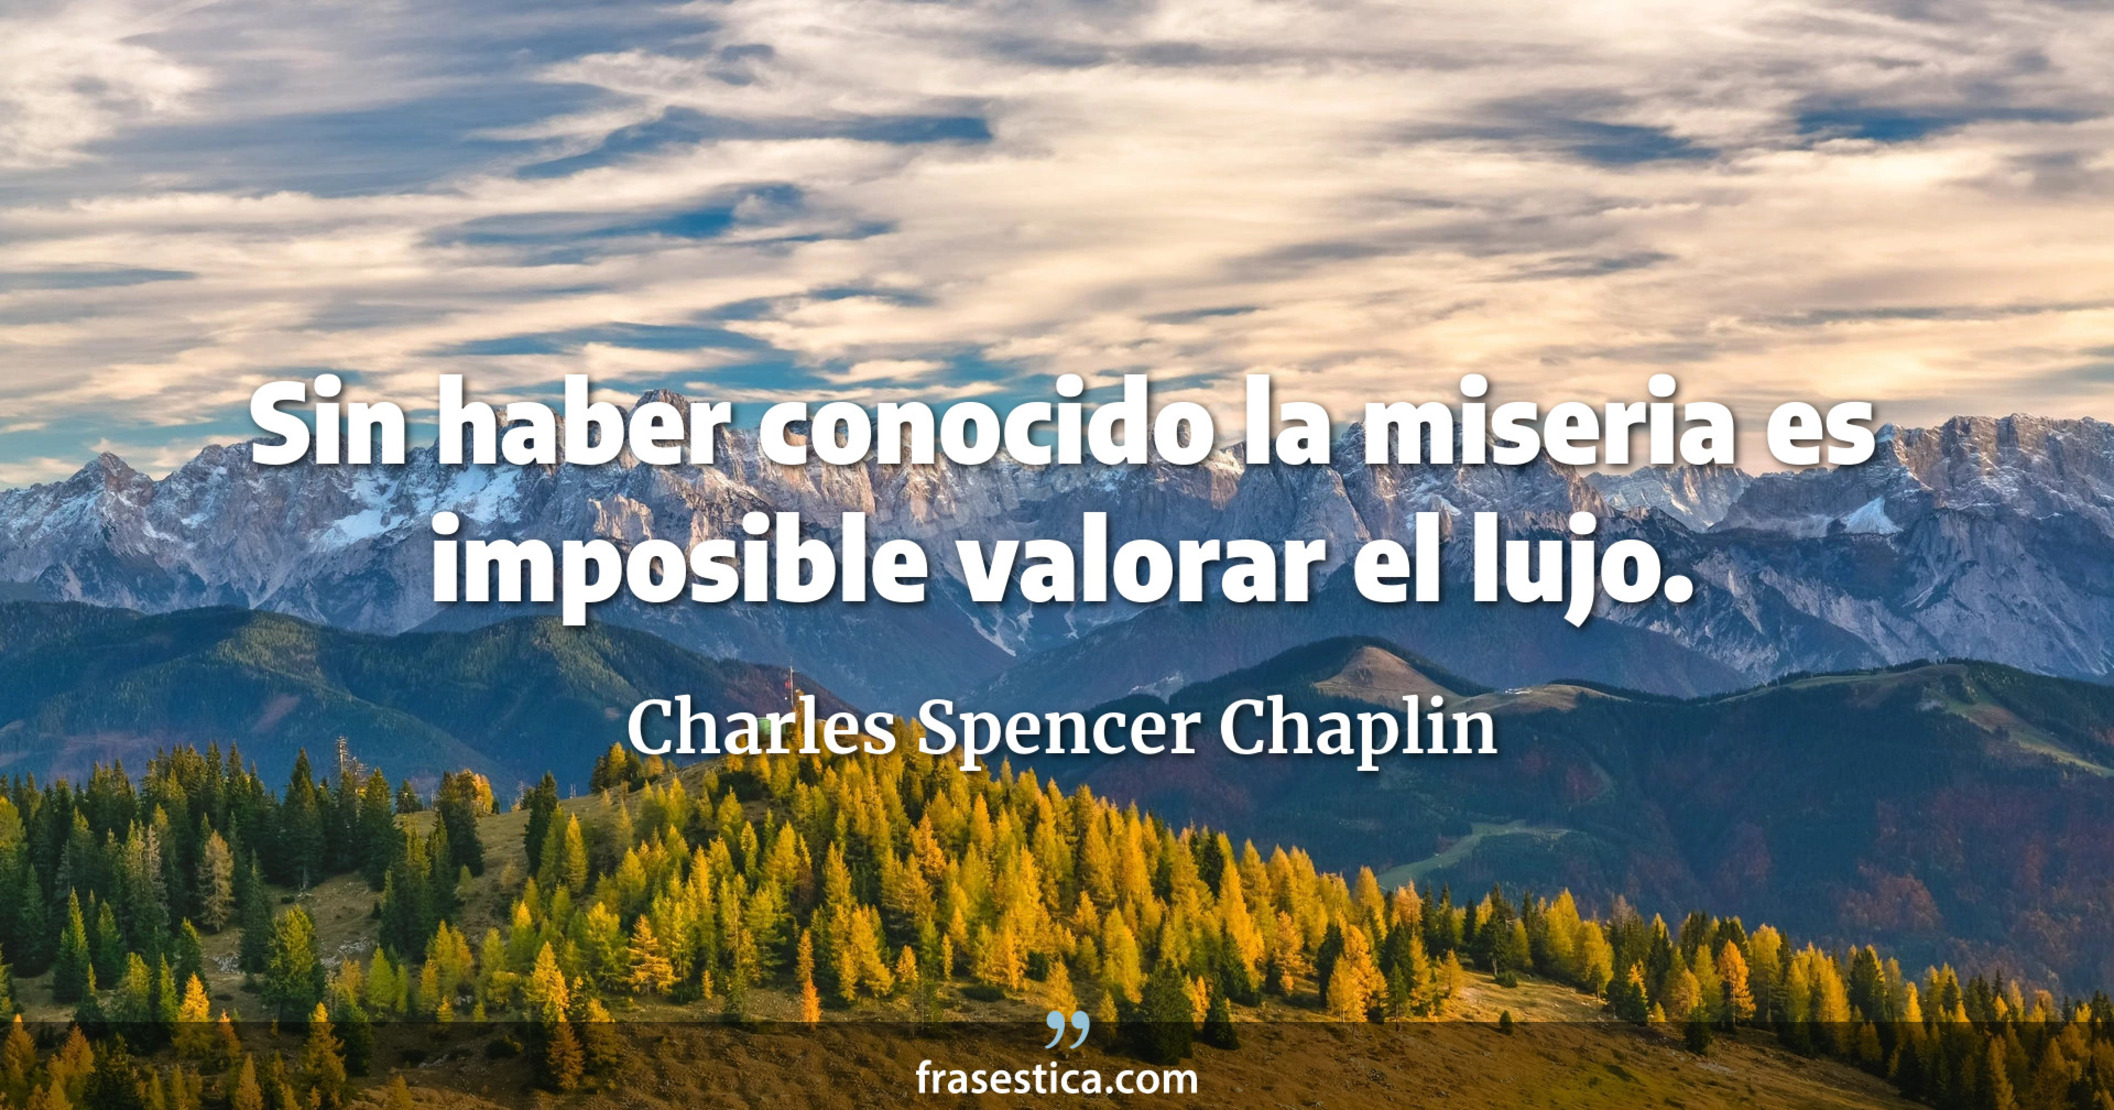 Sin haber conocido la miseria es imposible valorar el lujo. - Charles Spencer Chaplin